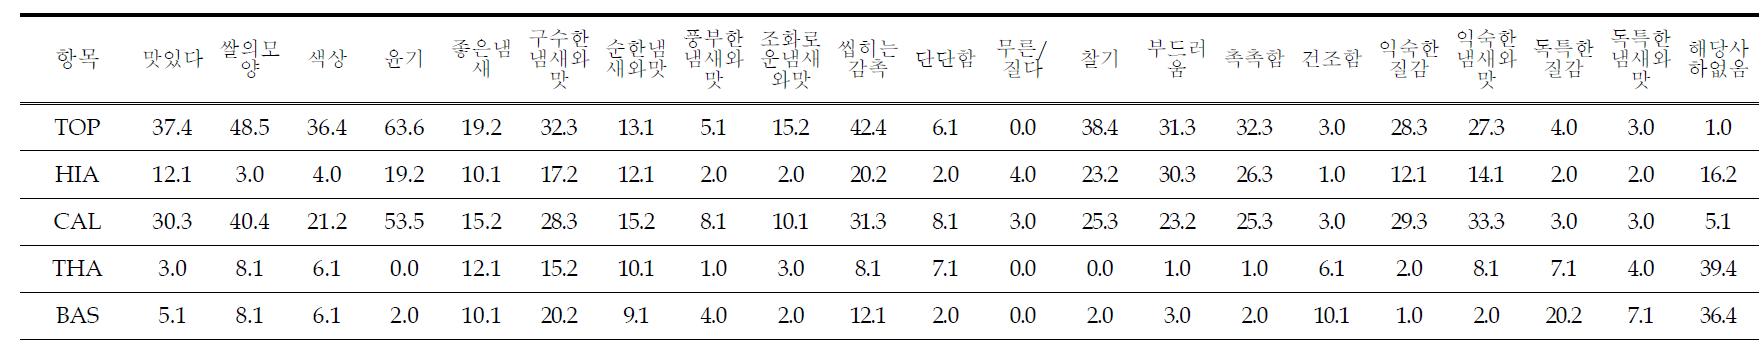 한국인이 평가한 흰밥 5종에 대한 장점 비율